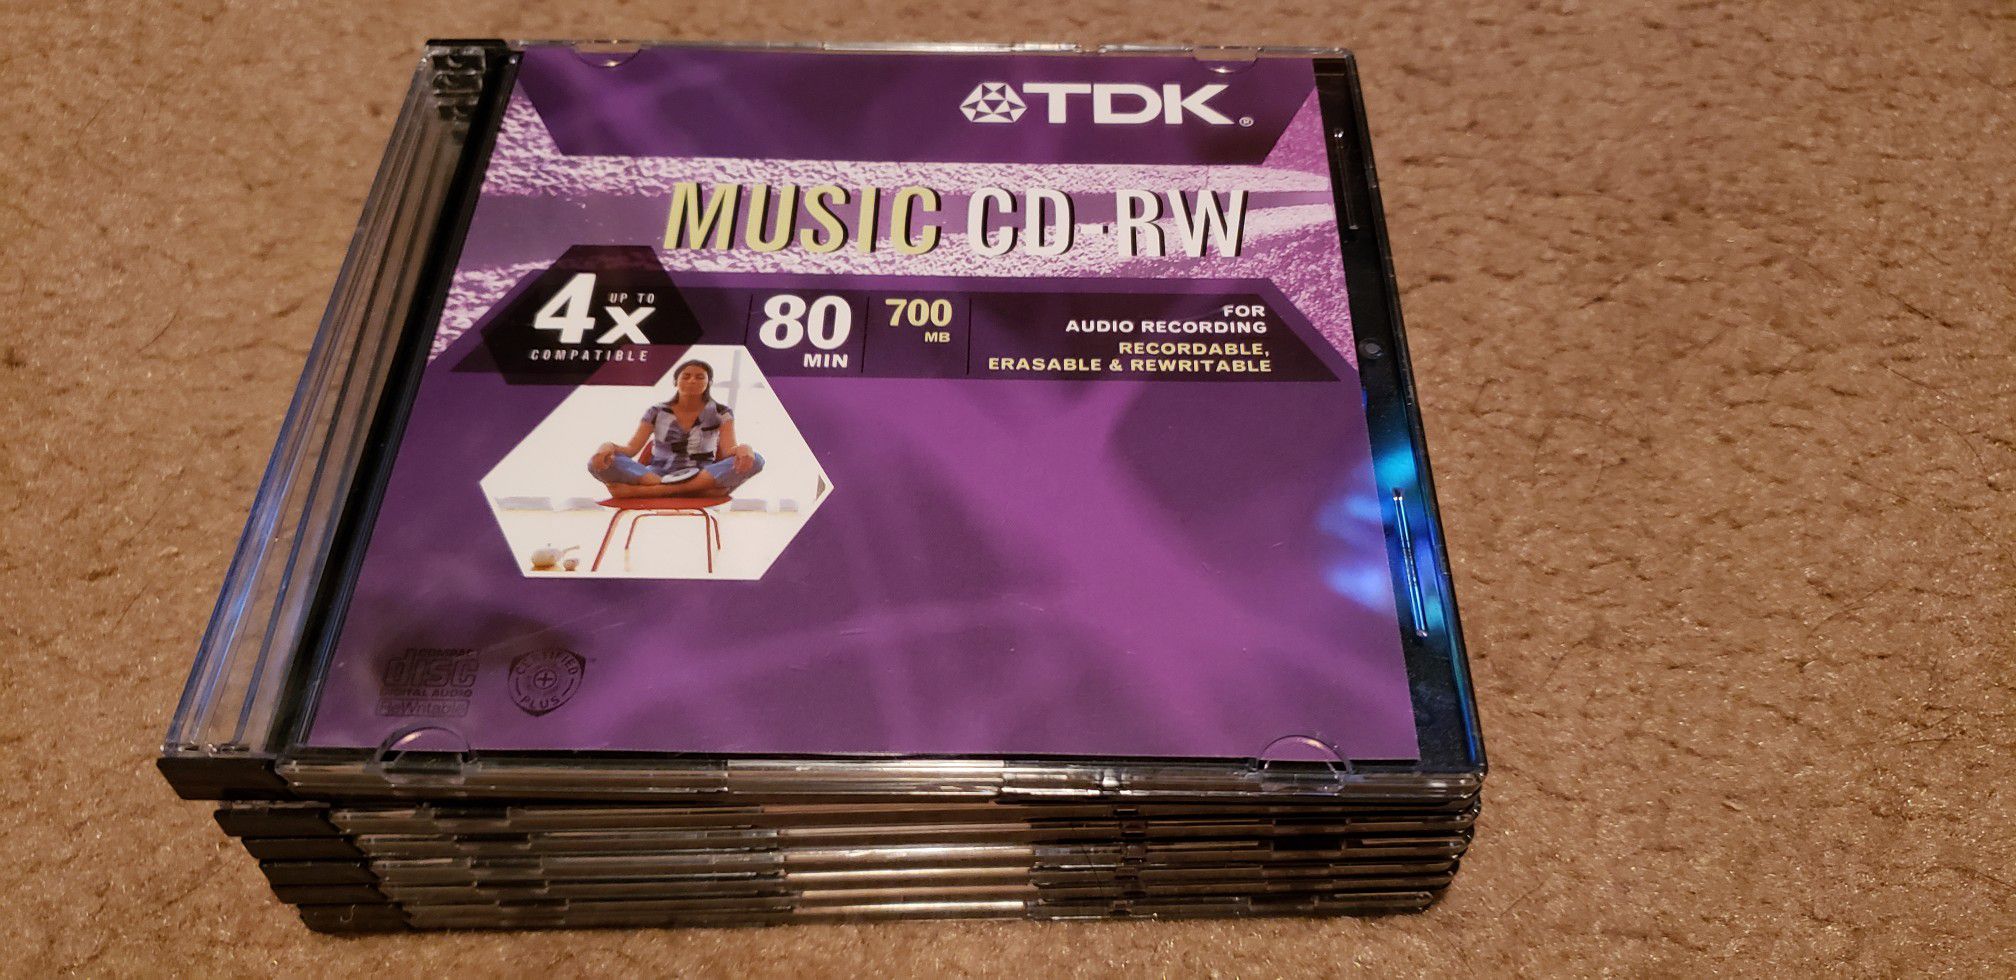 TDK Music CD - RW NEW Audio Recording Discs